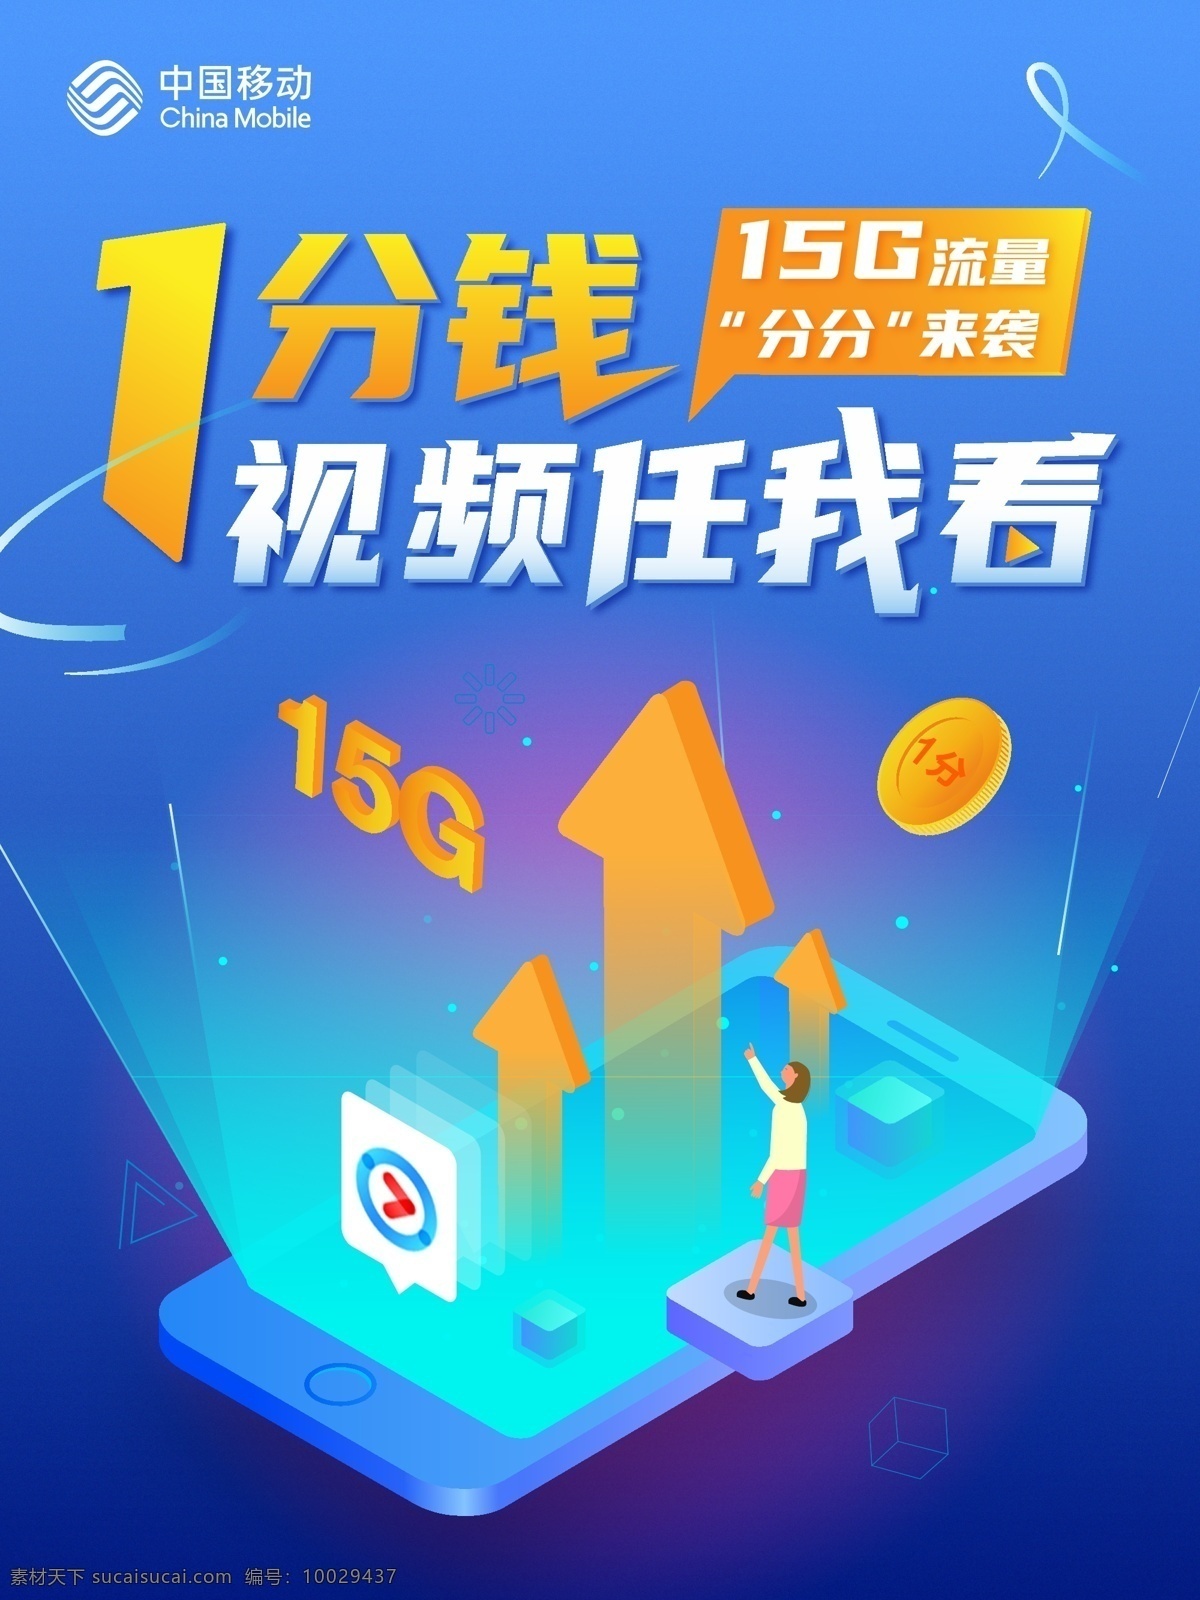 中国移动 分钱 视频 看 插画 海 海报 蓝色 扁平化 25d 手机 发光 电信 联通 商业 宣传广告 设计平面设计